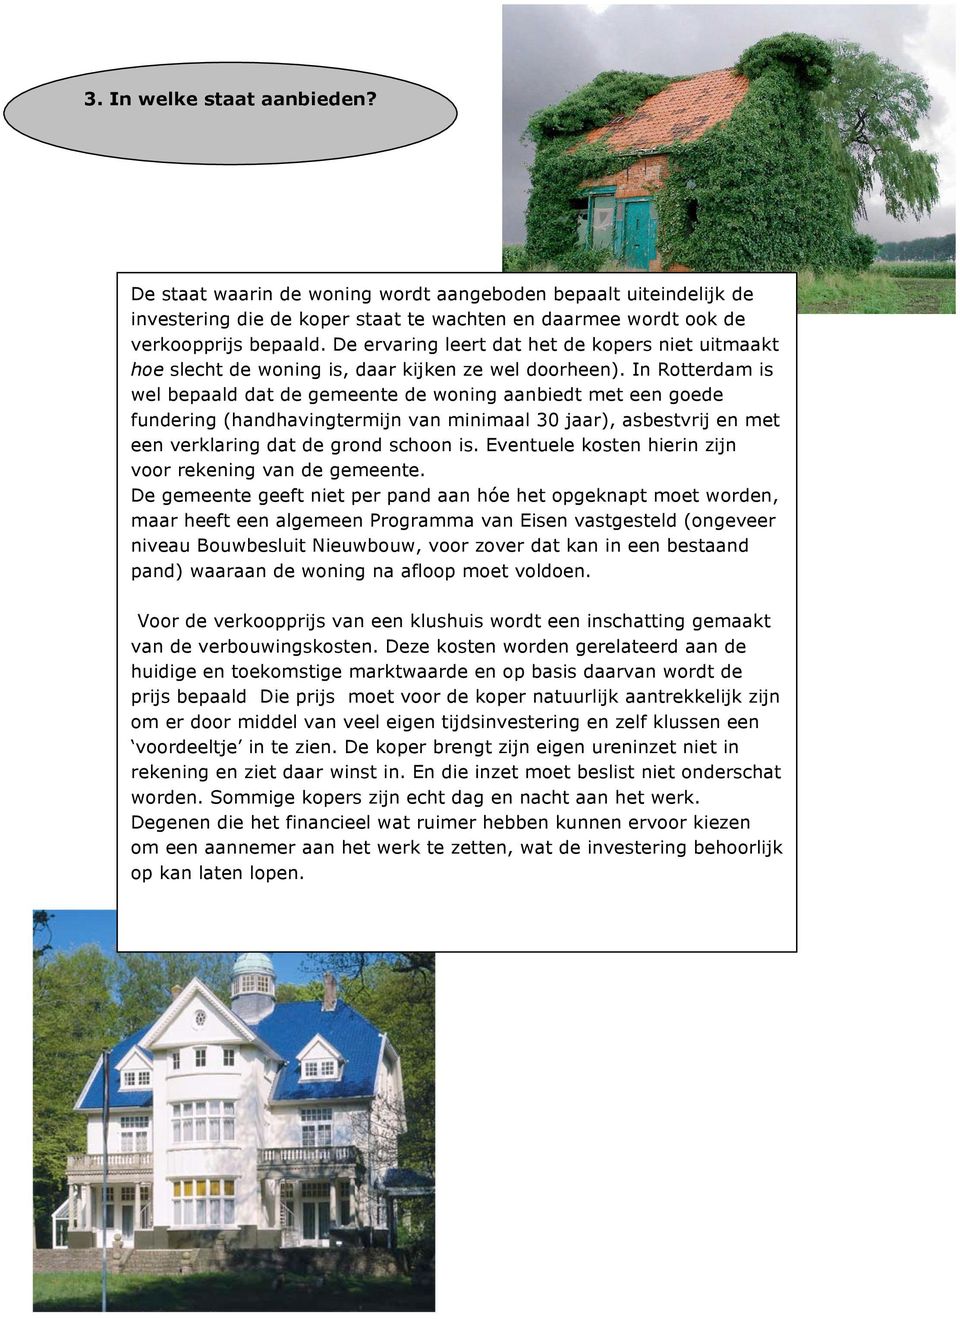 In Rotterdam is wel bepaald dat de gemeente de woning aanbiedt met een goede fundering (handhavingtermijn van minimaal 30 jaar), asbestvrij en met een verklaring dat de grond schoon is.